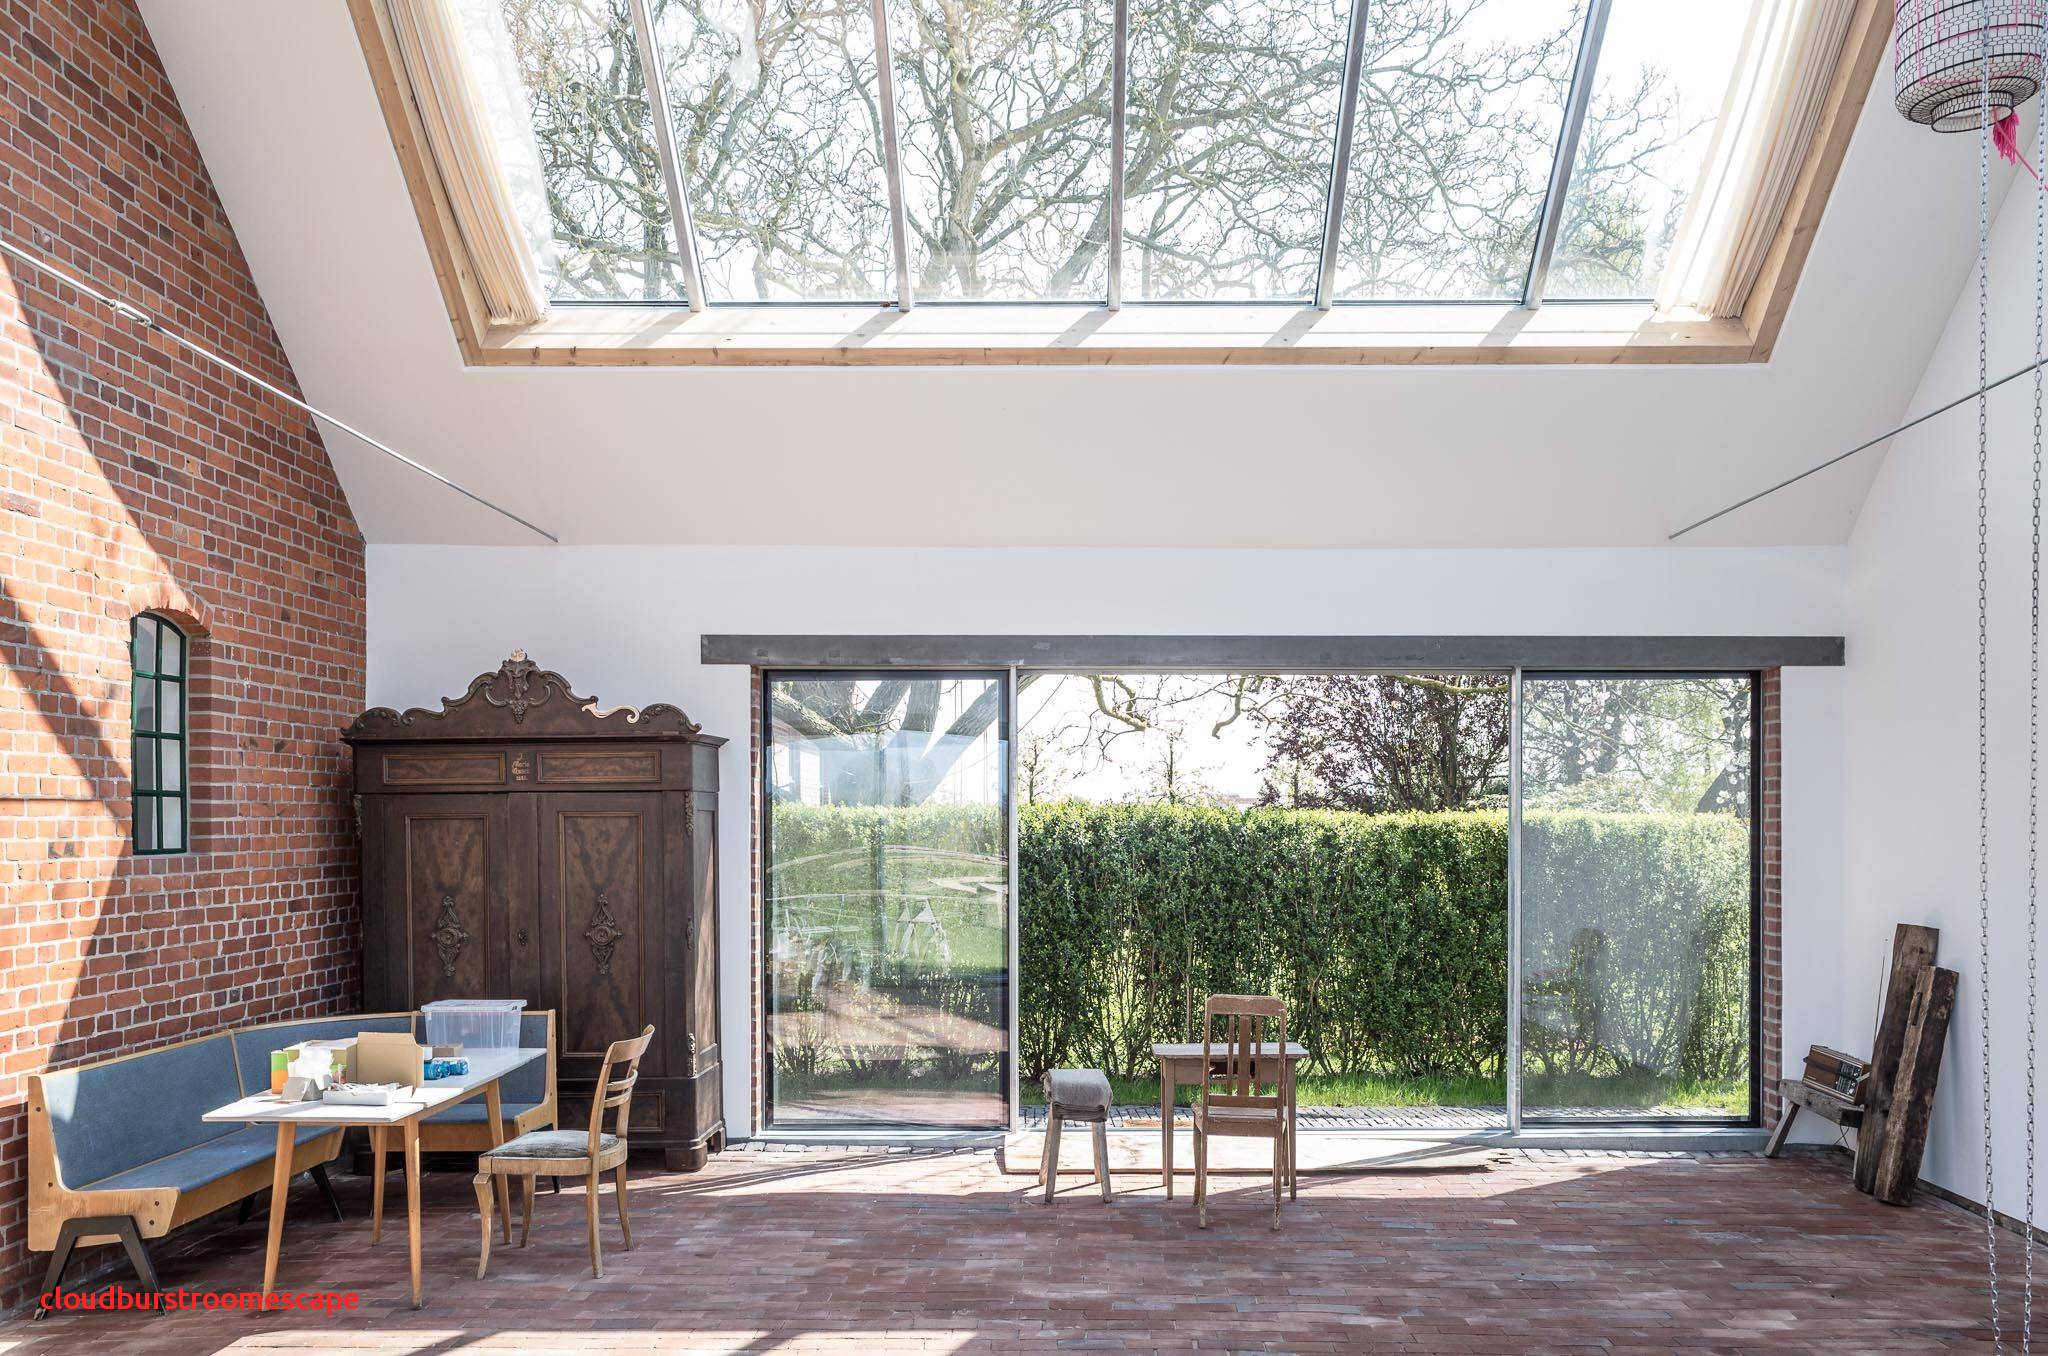 Deko Fenster Garten Einzigartig Luxus Wohnzimmer Ideen Fenster Konzept